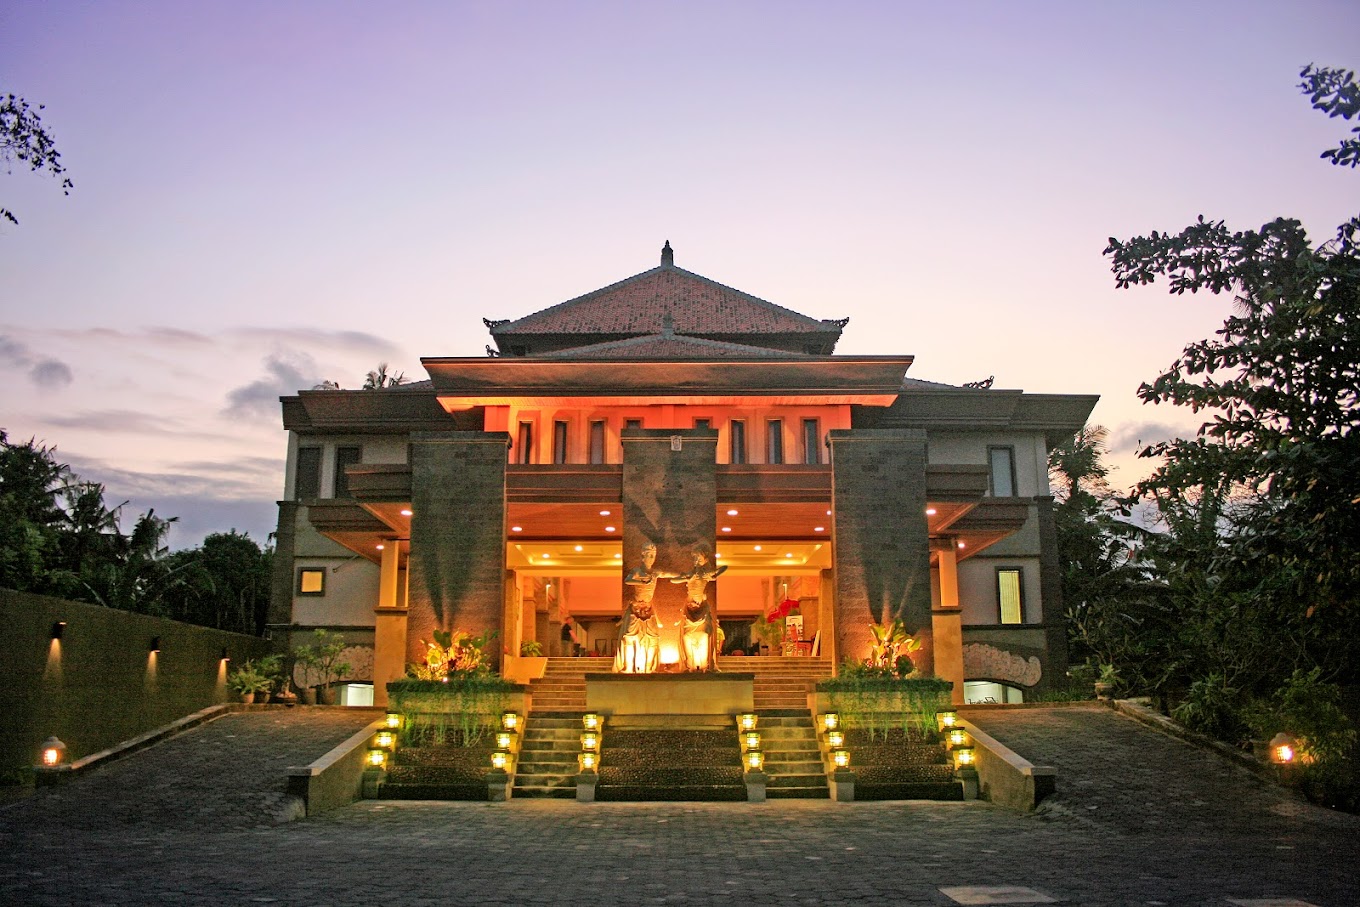 Pelangi Bali Hotel e centro termale